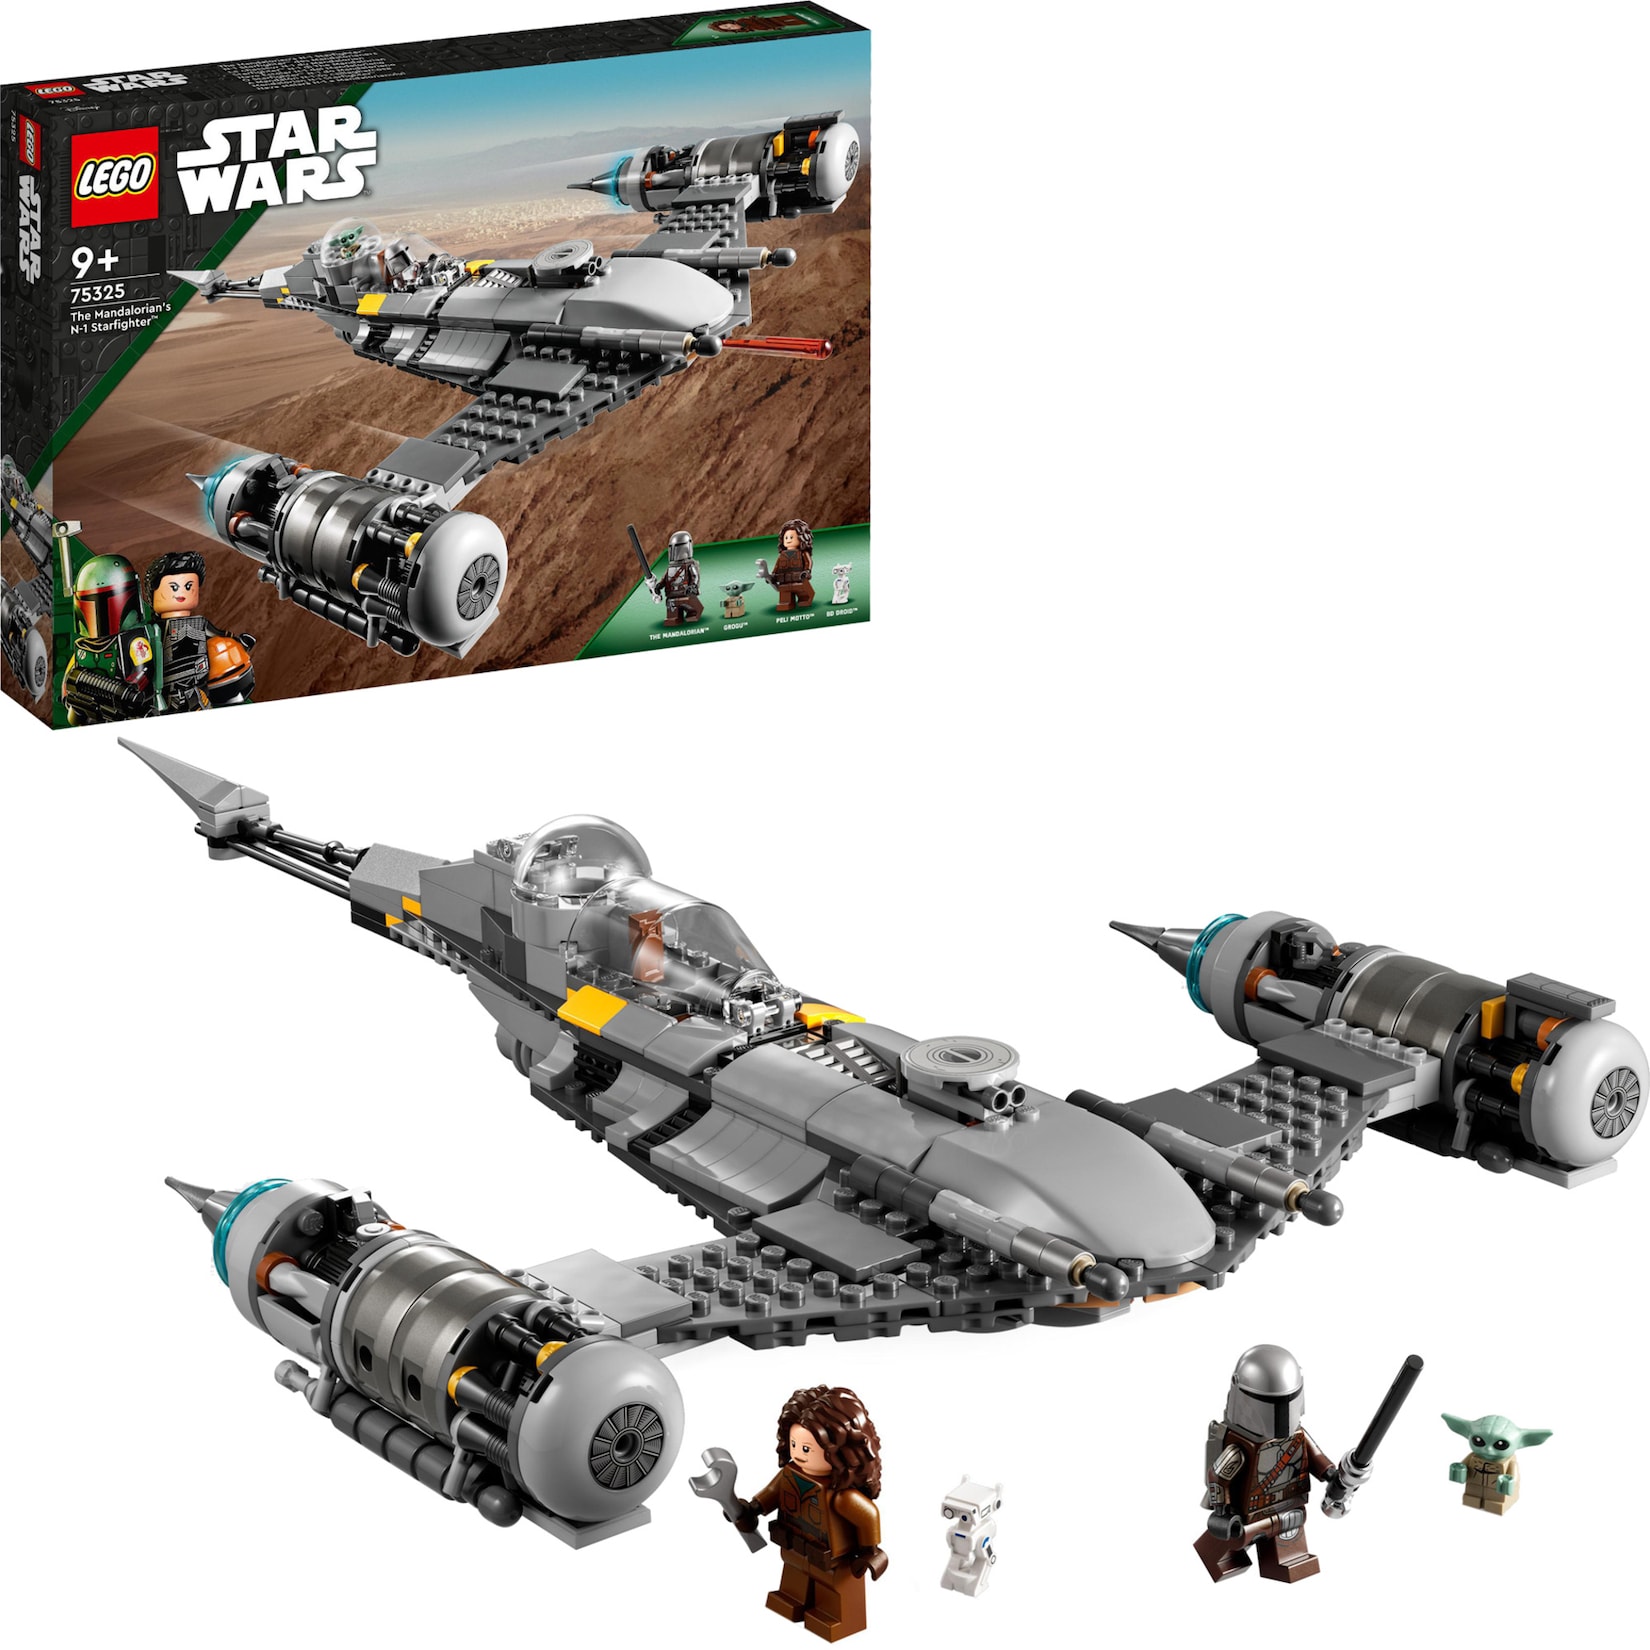 LEGO Konstruktionsspielzeug Star Wars Der N-1 Starfighter des Mandalorianers